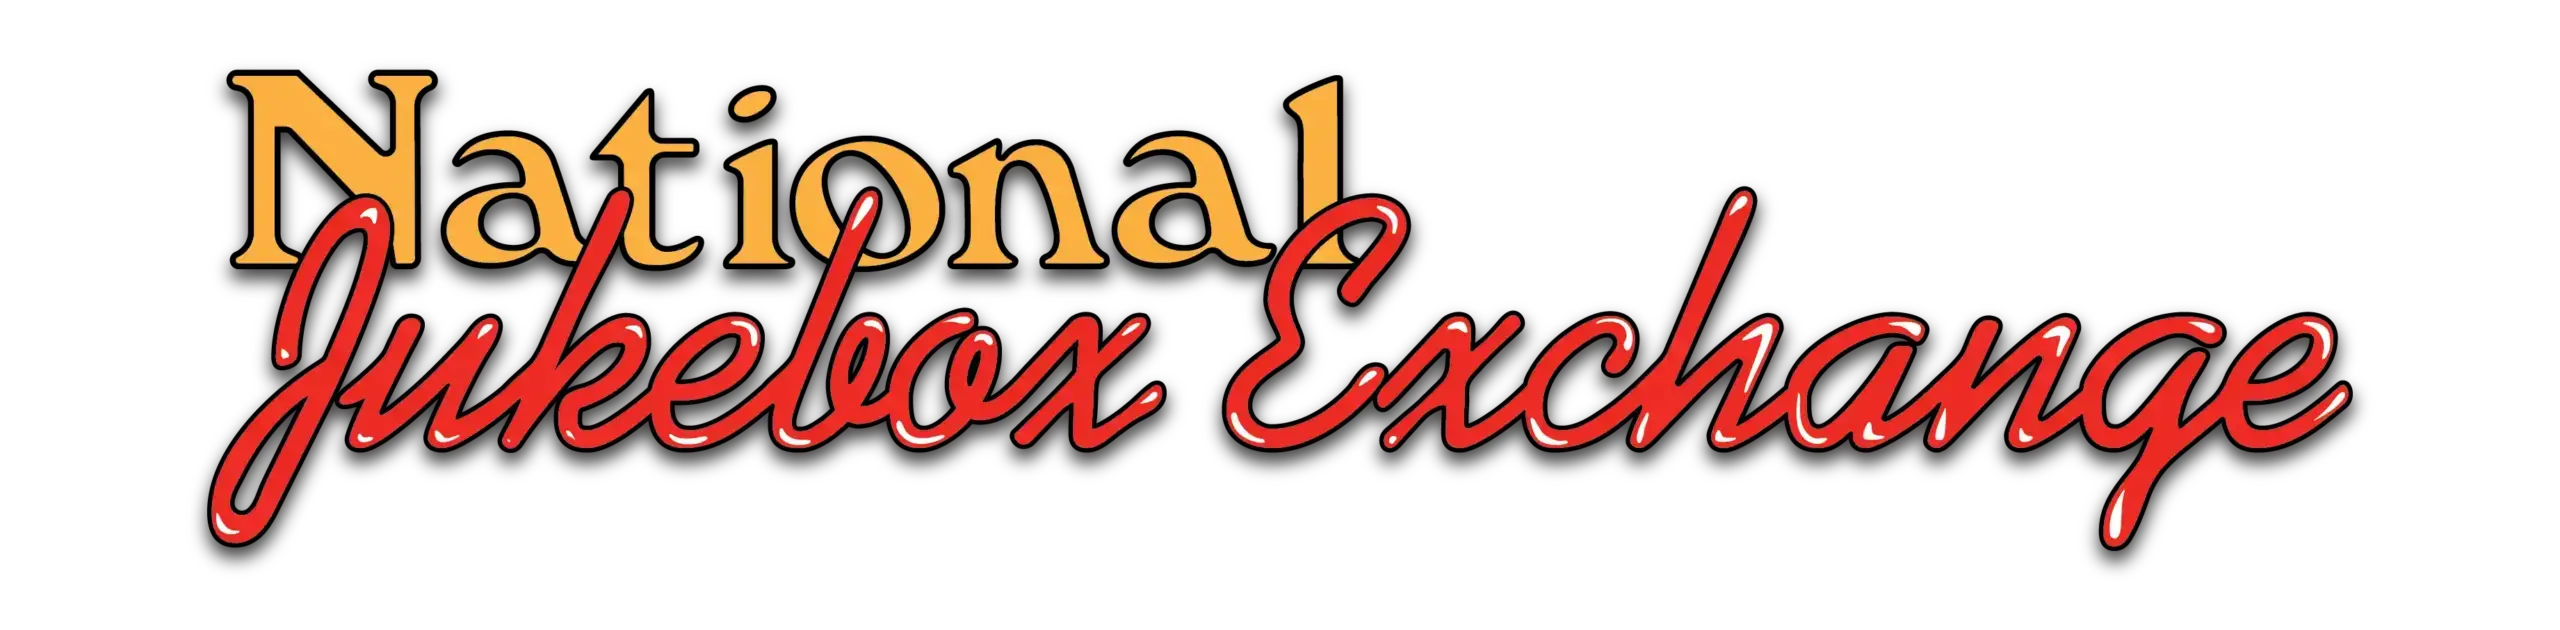 National Jukebox Exchange Logo